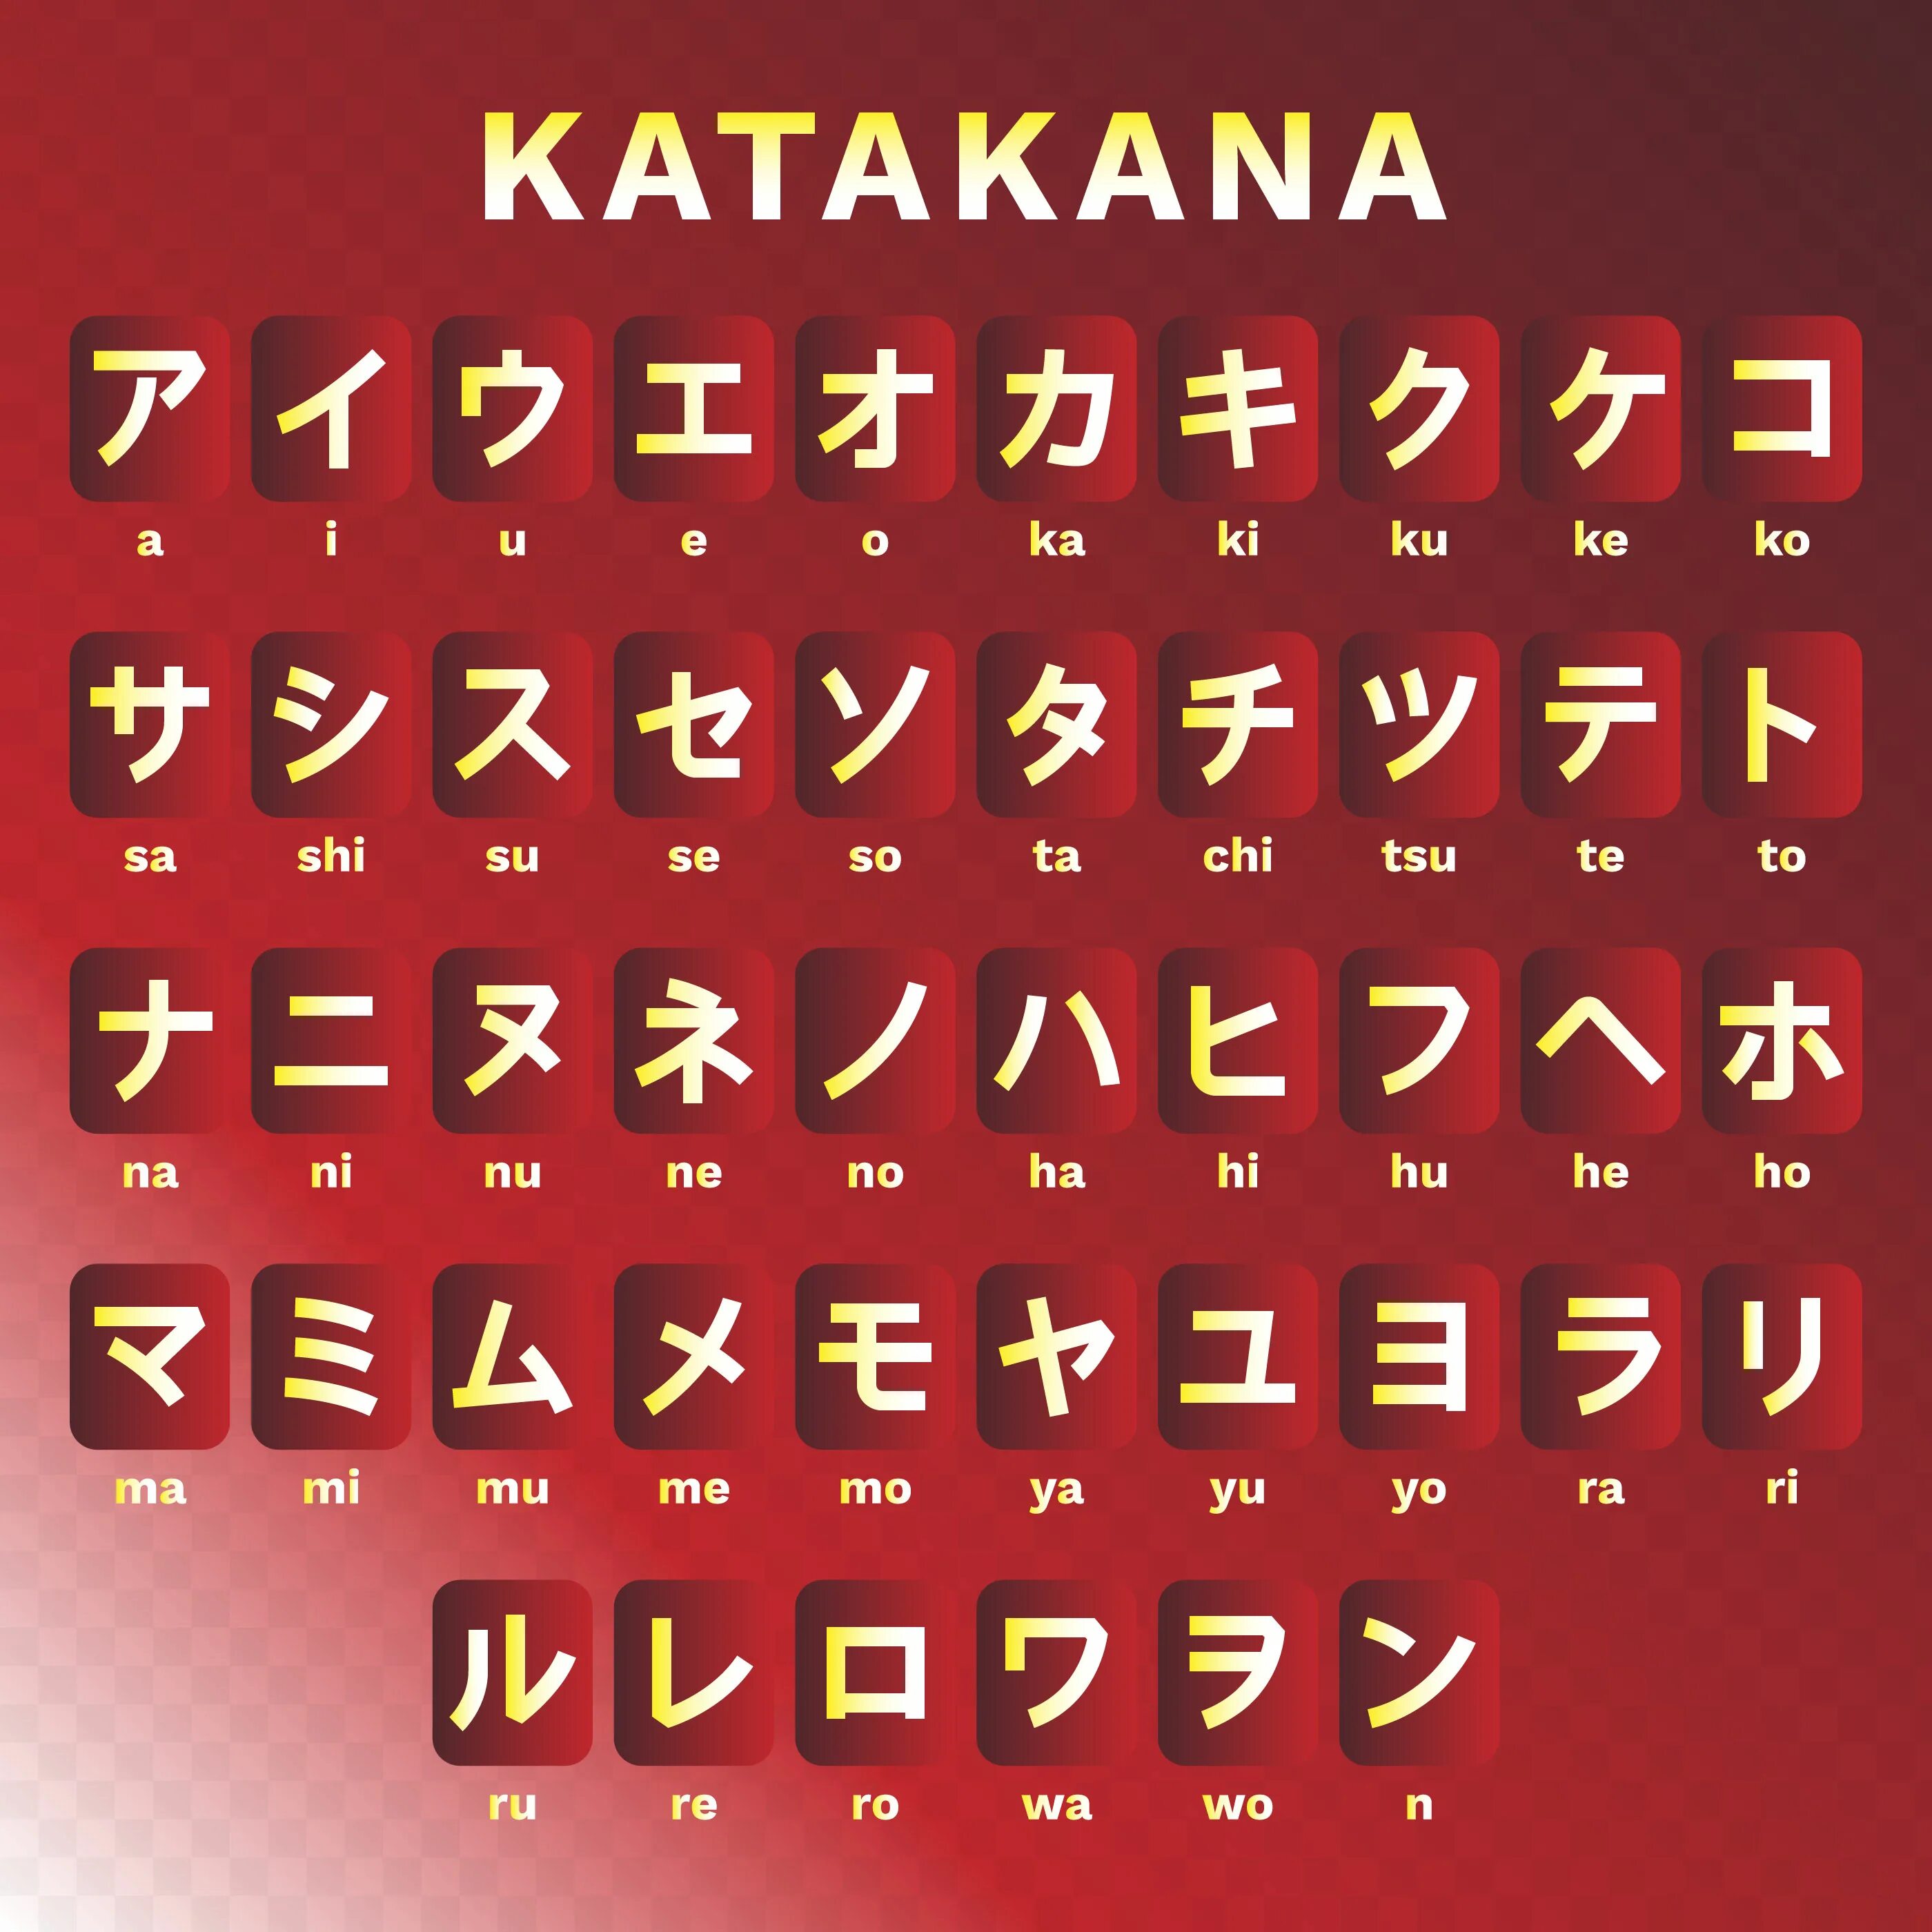 Голосовой букв. Японская Азбука катакана. Алфавит ,,катакана японский алфавит. Японская письменность катакана. Японский алфавит катаканы.